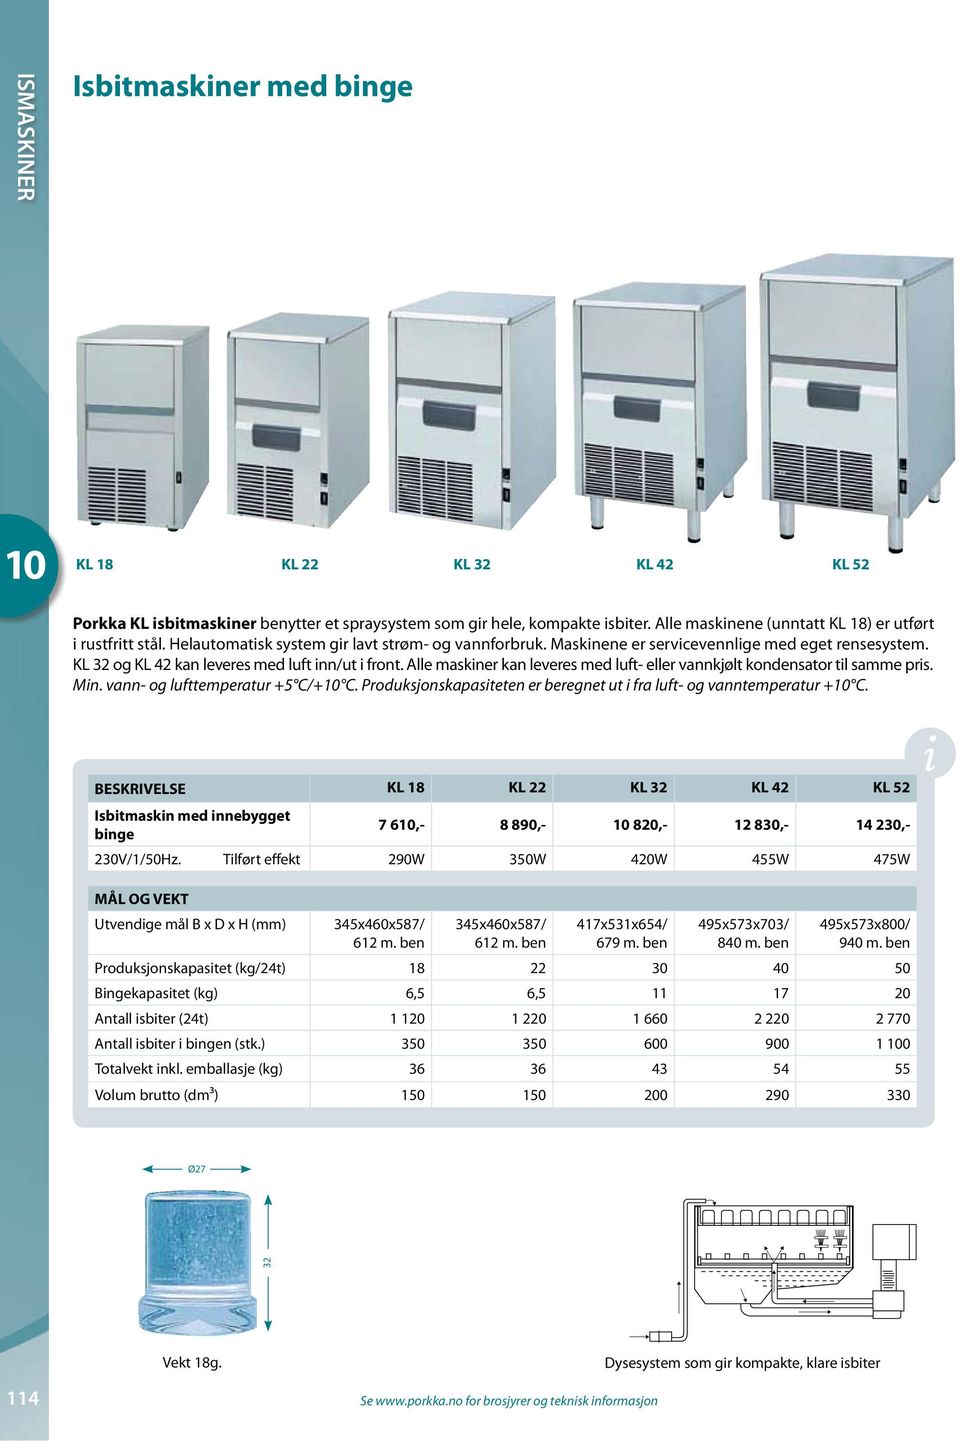 Alle maskiner kan leveres med luft- eller vannkjølt kondensator til samme pris. Min. vann- og lufttemperatur +5 C/+ C. Produksjonskapasiteten er beregnet ut i fra luft- og vanntemperatur + C.